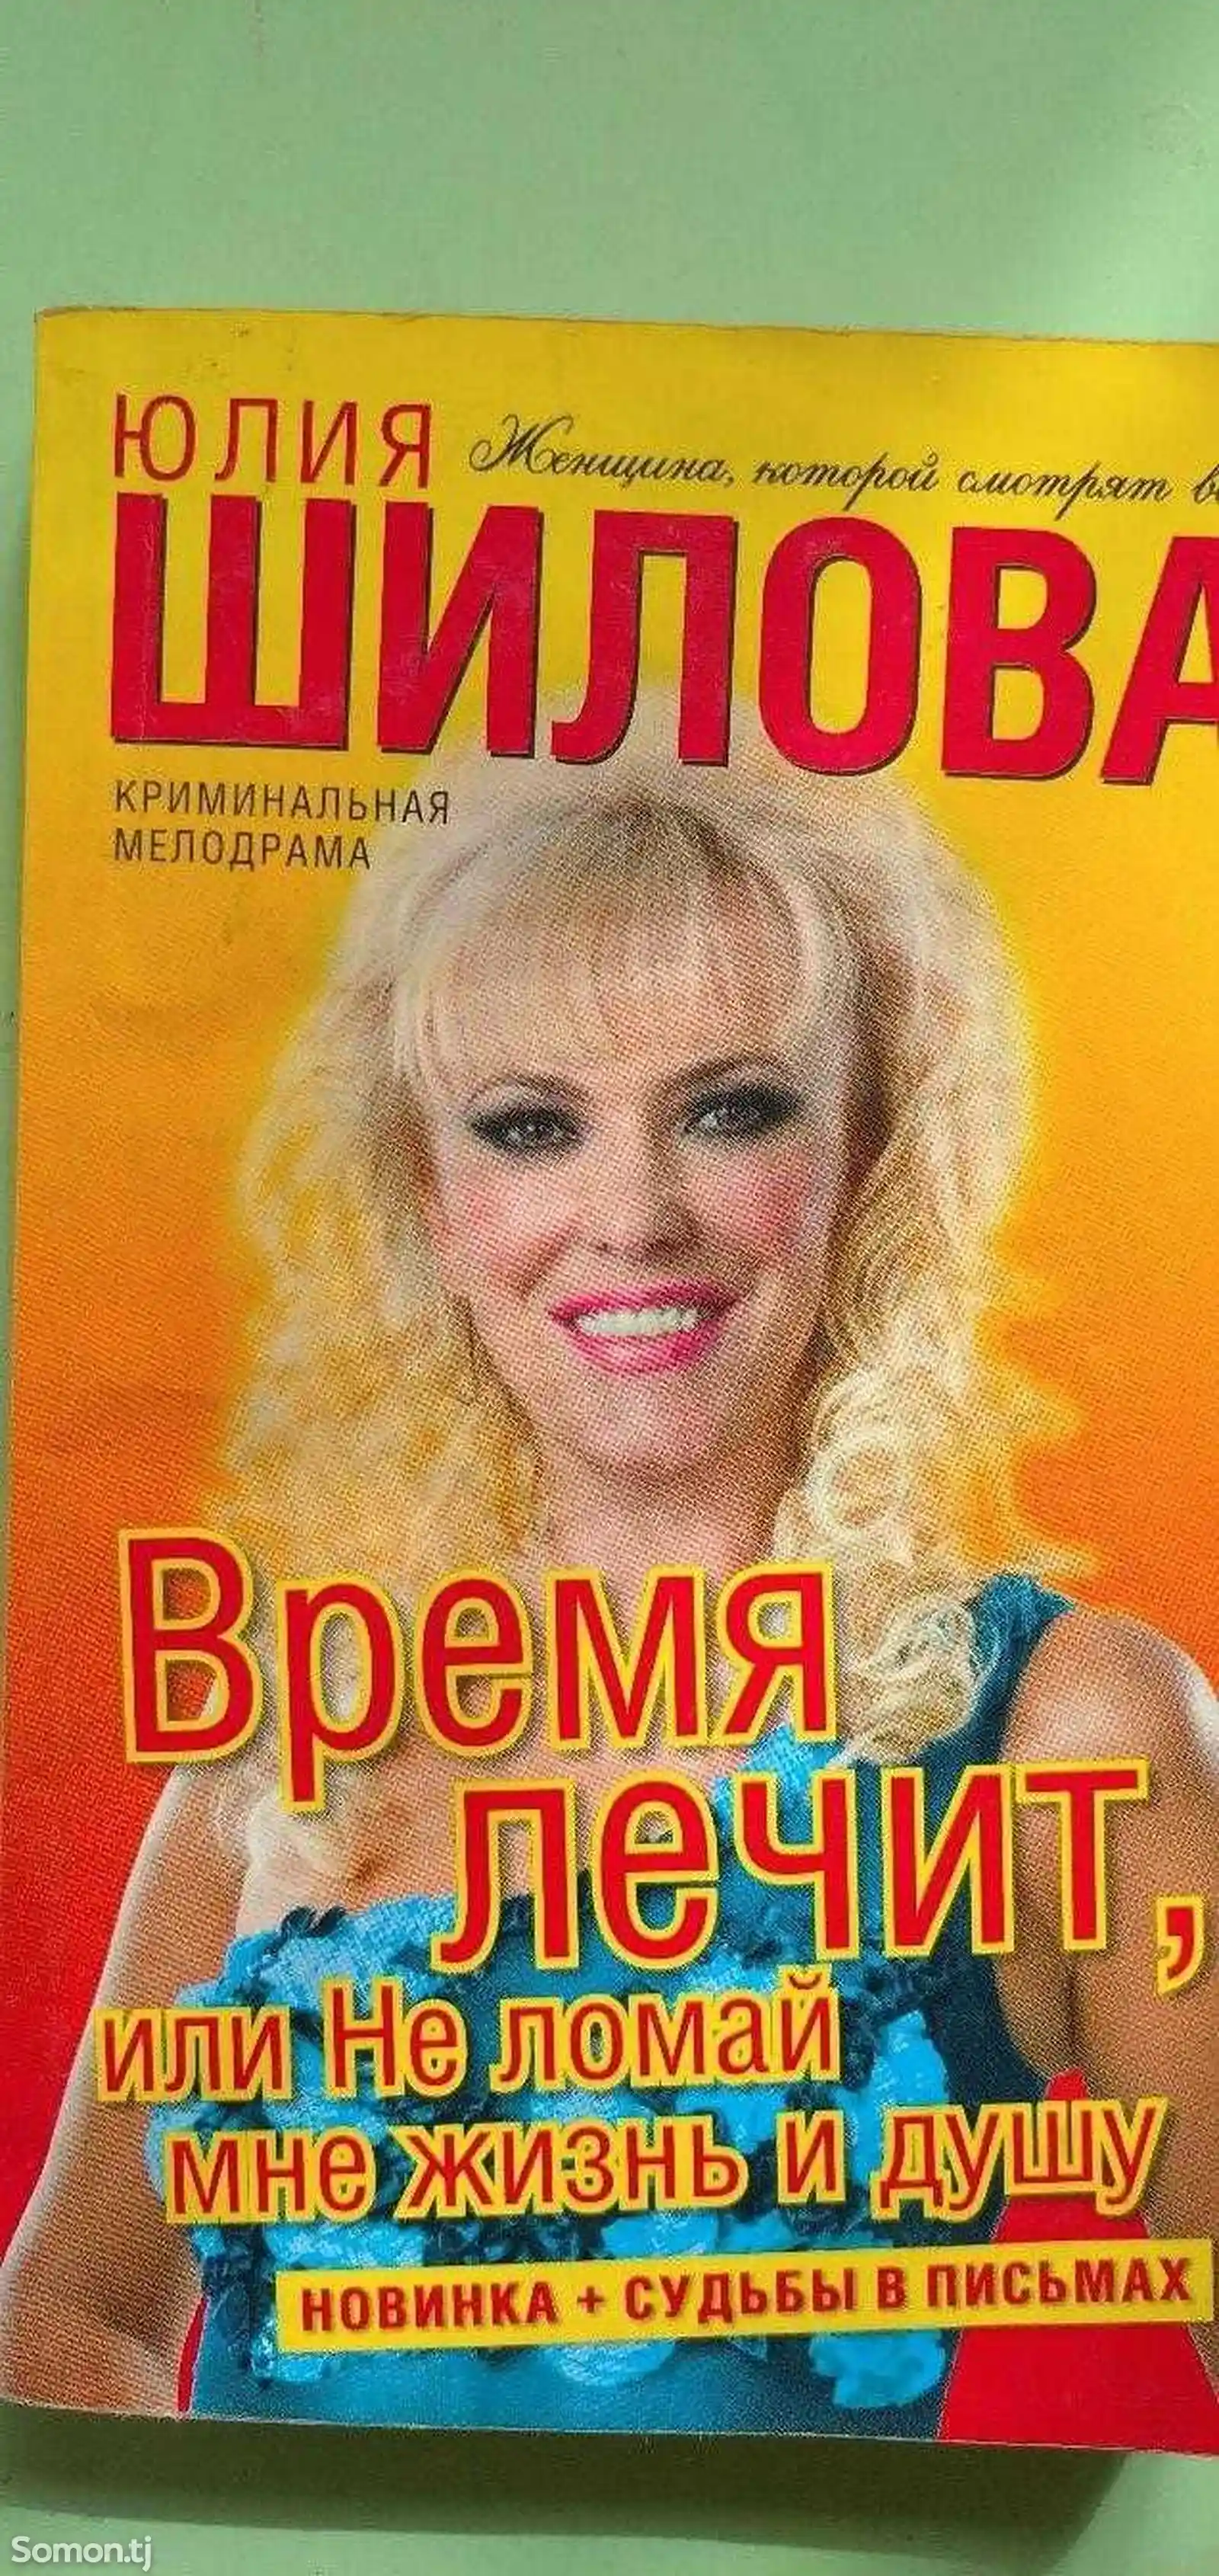 Книга Юлия Шилова